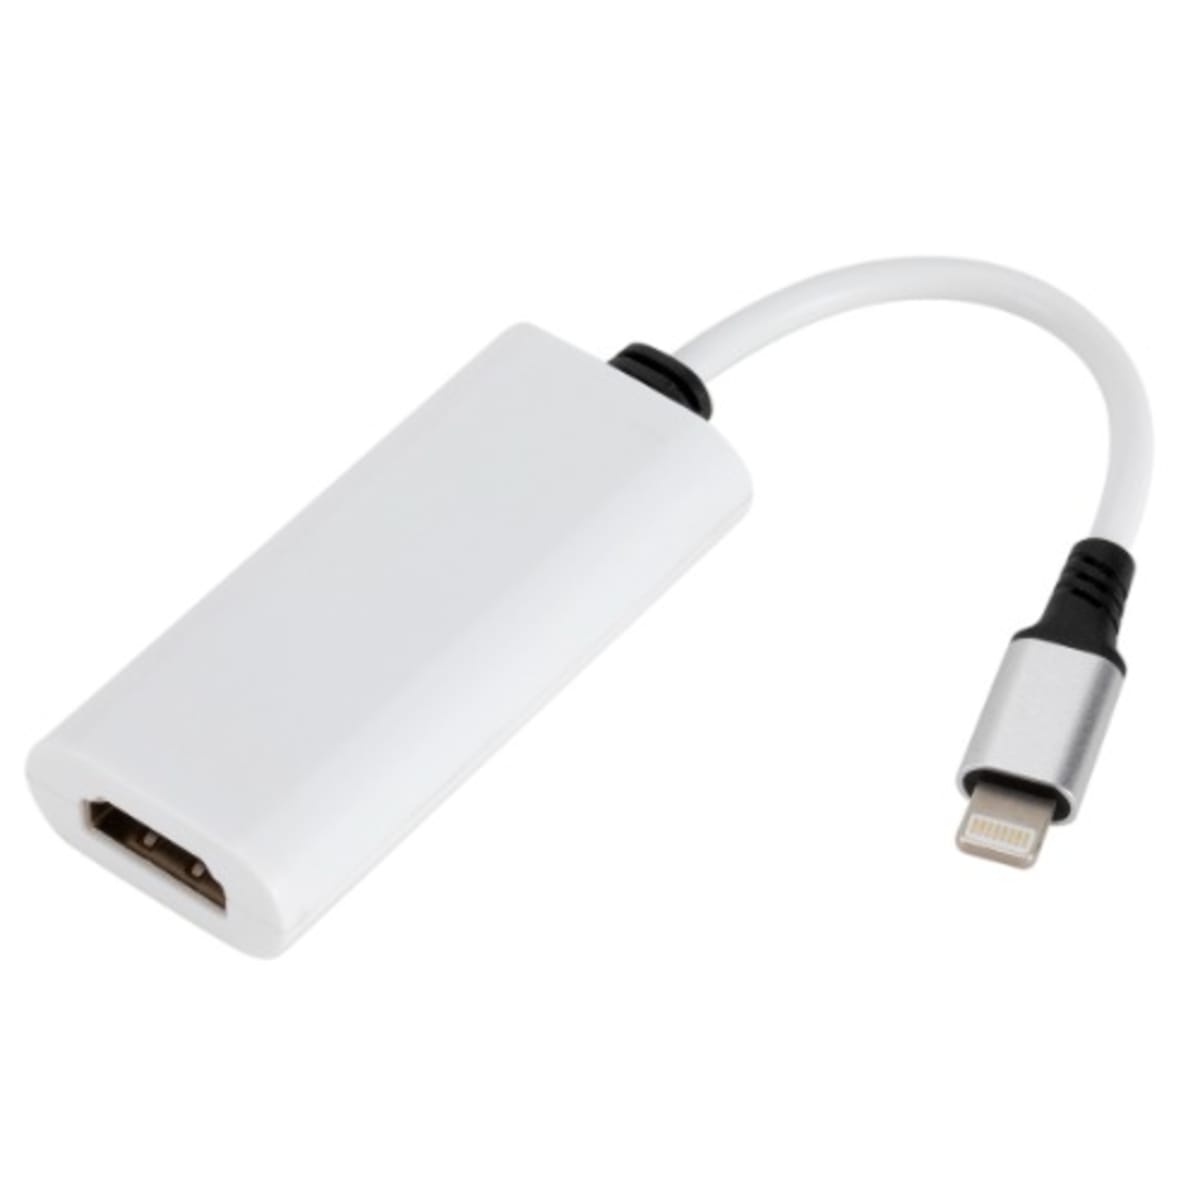 Product  Apple Lightning Digital AV Adapter - Lightning cable